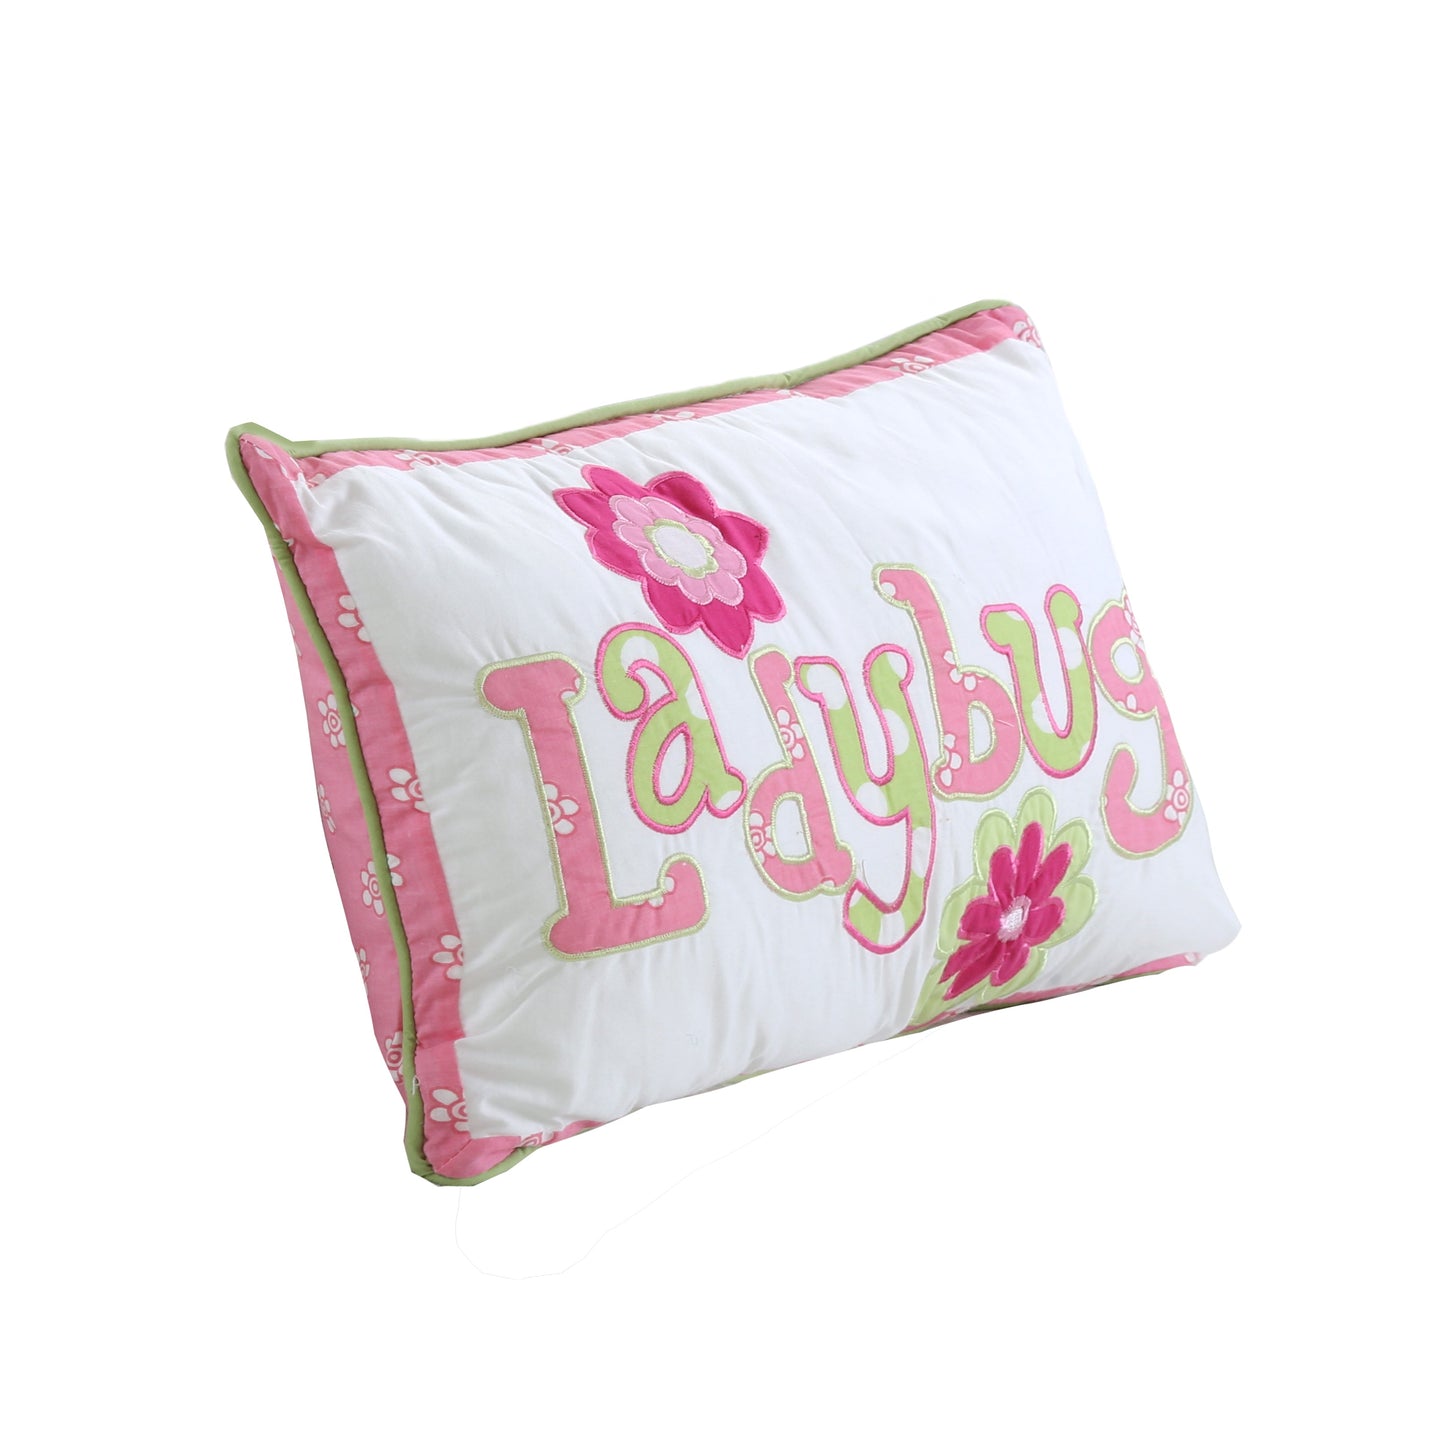 Pink Ladybug Dot Rectangular Decor Throw Pillow